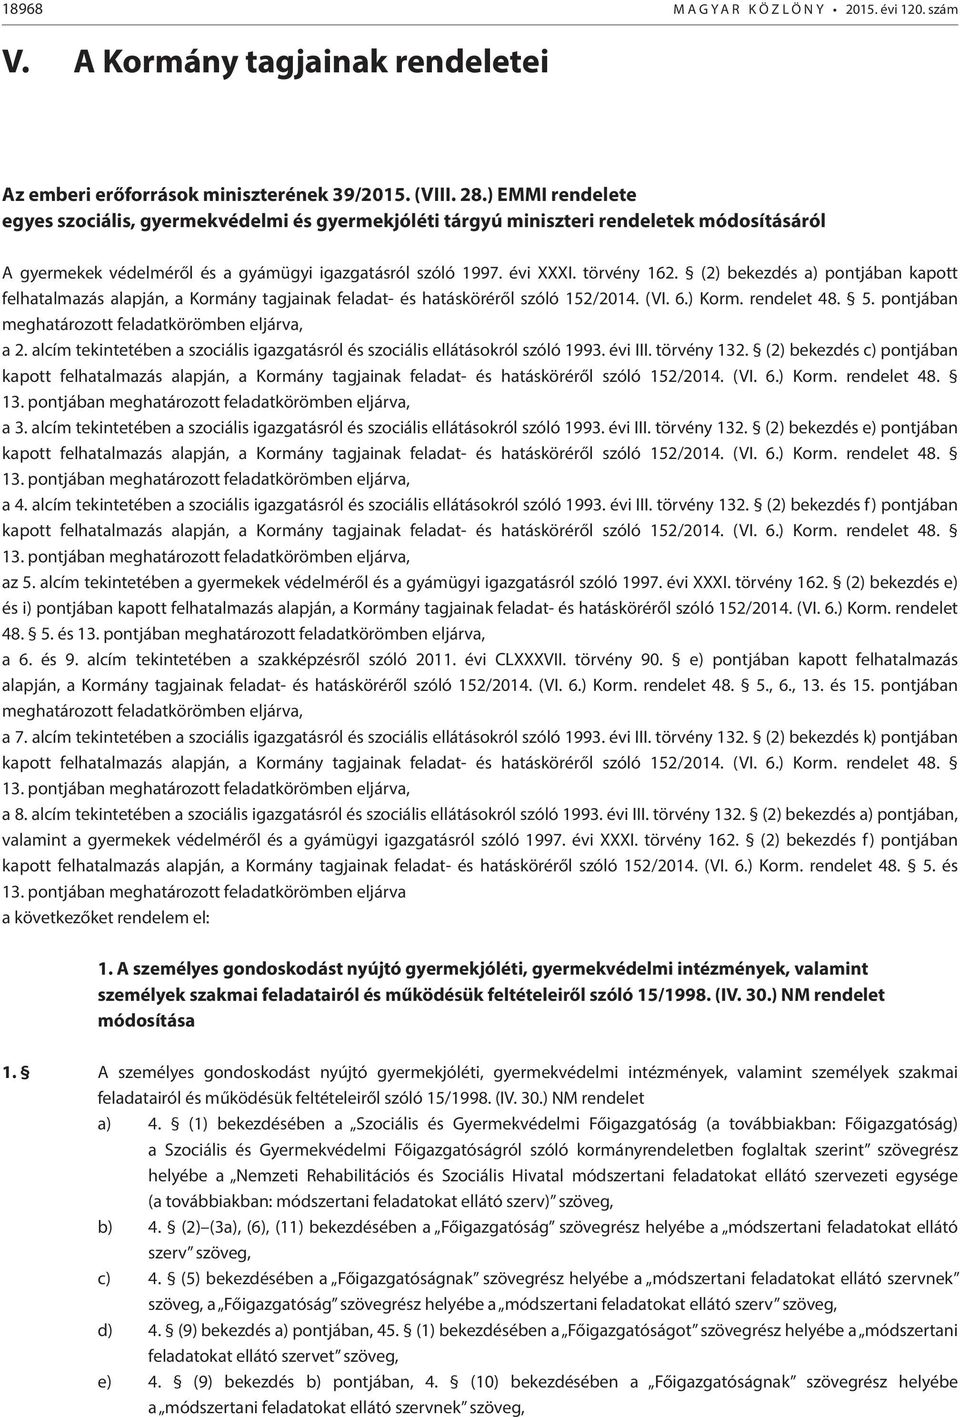 (2) bekezdés a) pontjában kapott felhatalmazás alapján, a Kormány tagjainak feladat- és hatásköréről szóló 152/2014. (VI. 6.) Korm. rendelet 48. 5.